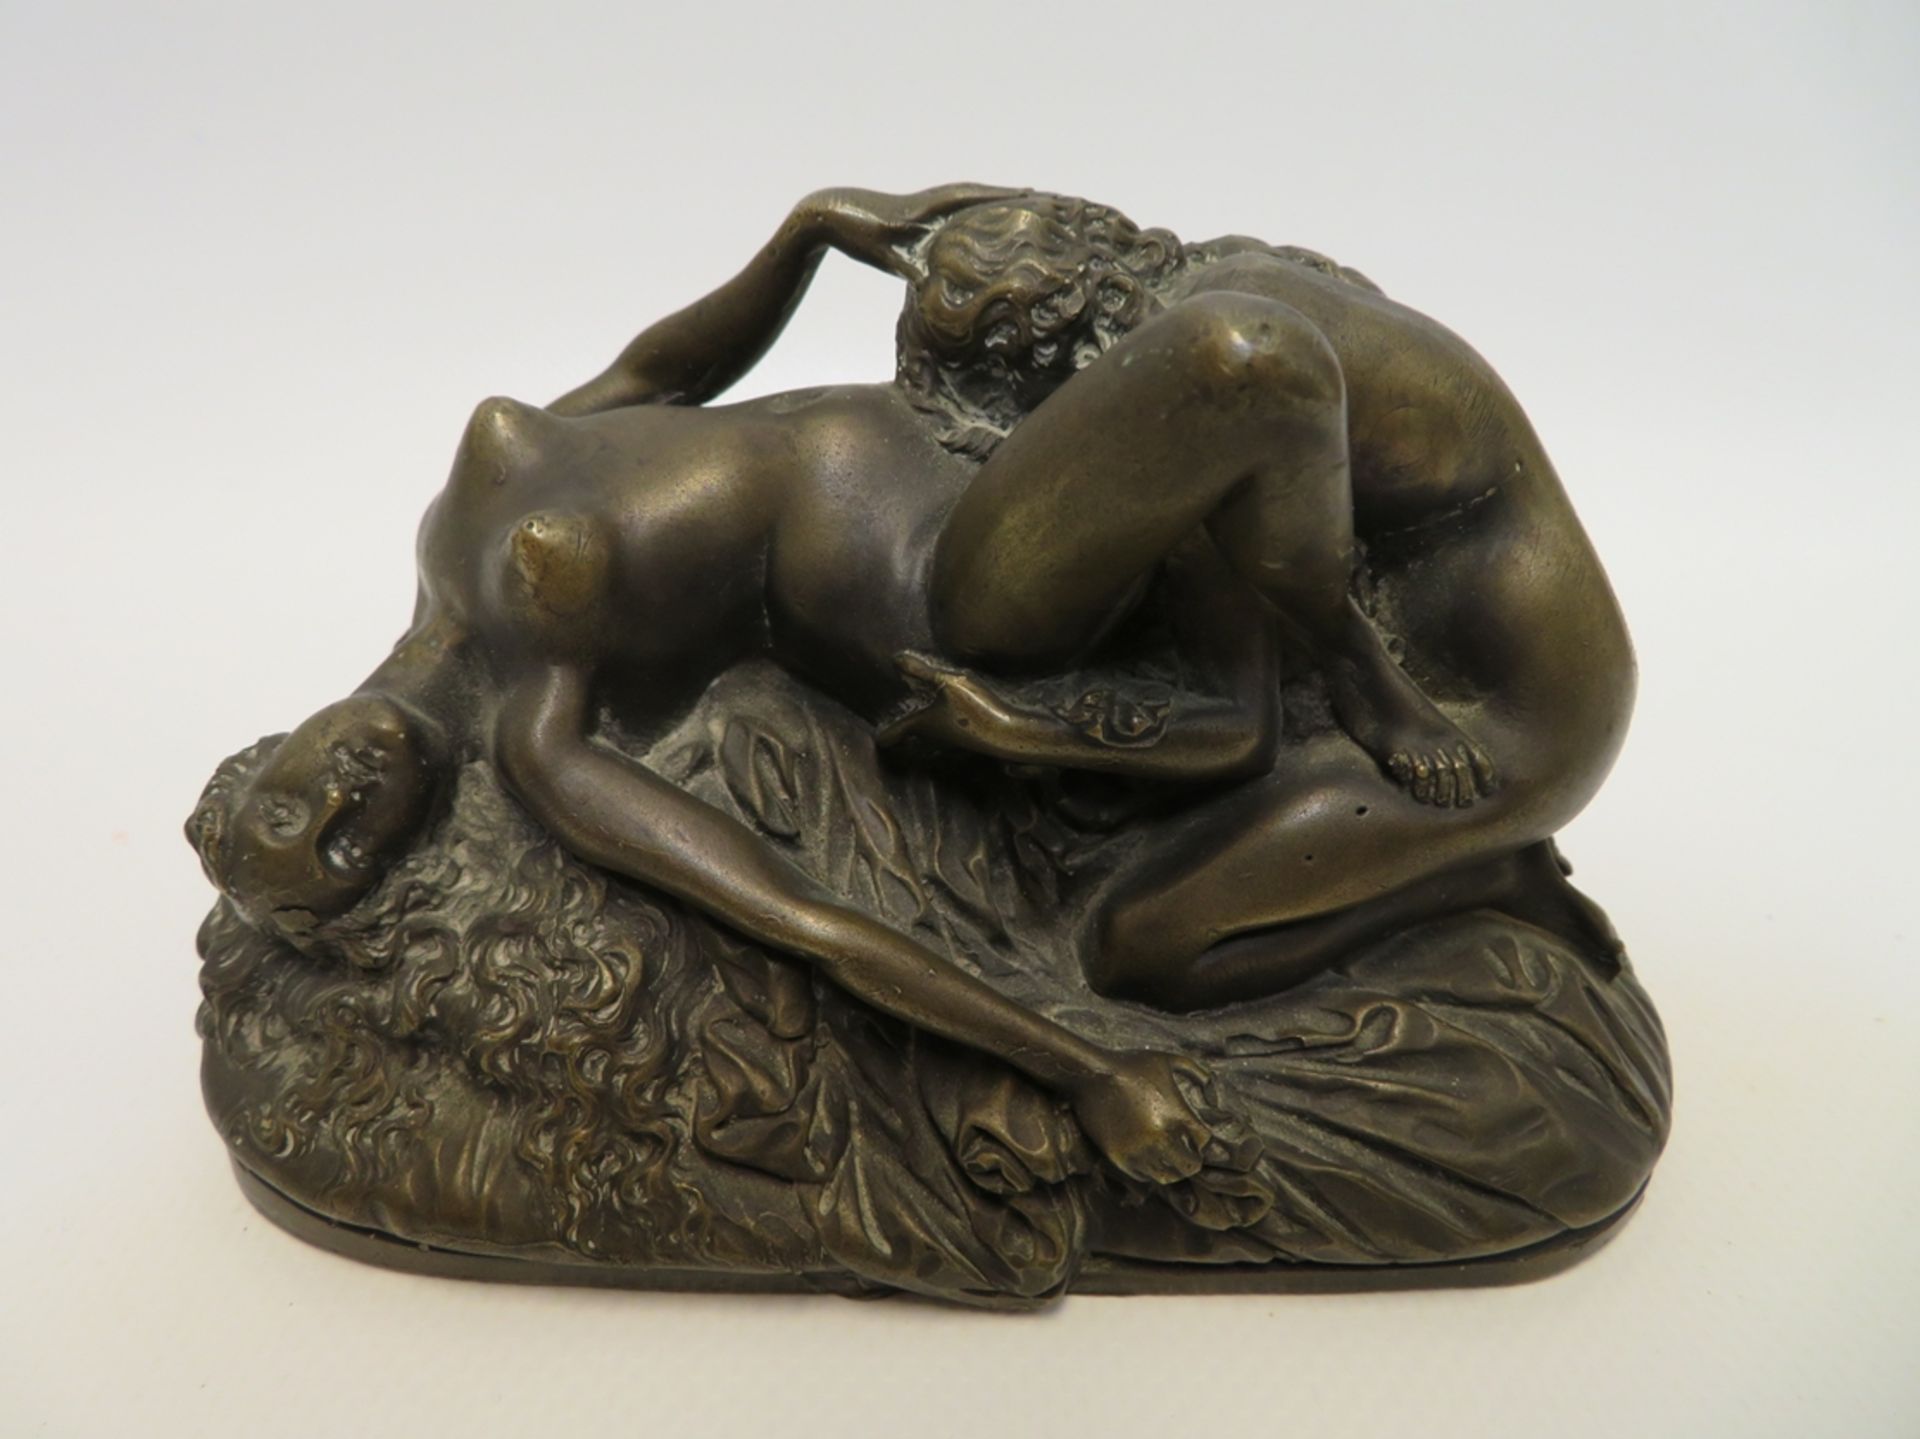 Unbekannt, um 1900, Erotische Darstellung, Bronze, 8 x 13 x 7 cm.